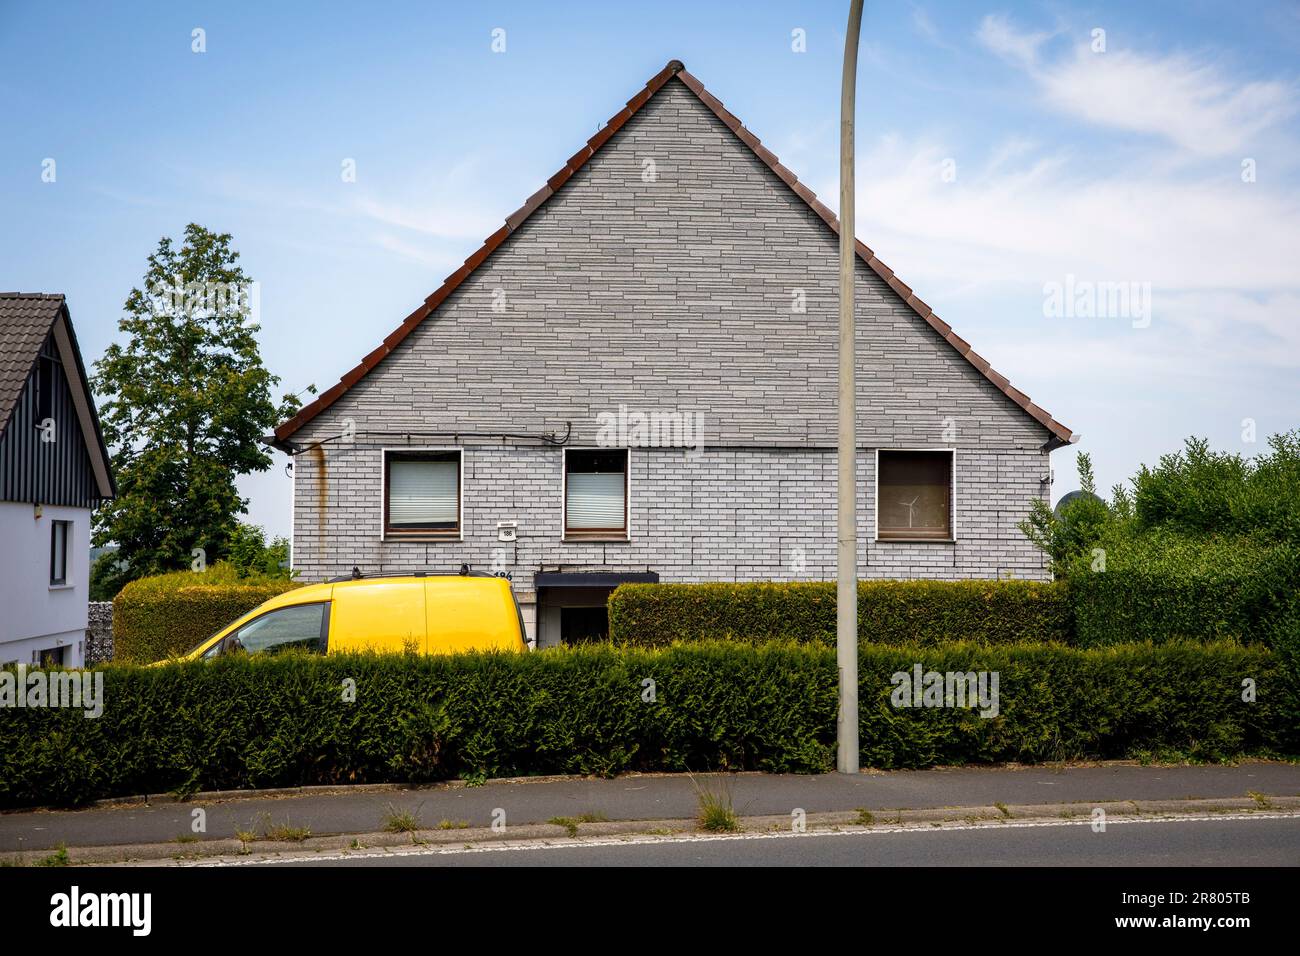 Une voiture jaune se trouve derrière une haie devant une maison en briques grises à Gevelsberg-Silschede, Rhénanie-du-Nord-Westphalie, Allemagne. indication de direction automatique ein gelbes Banque D'Images